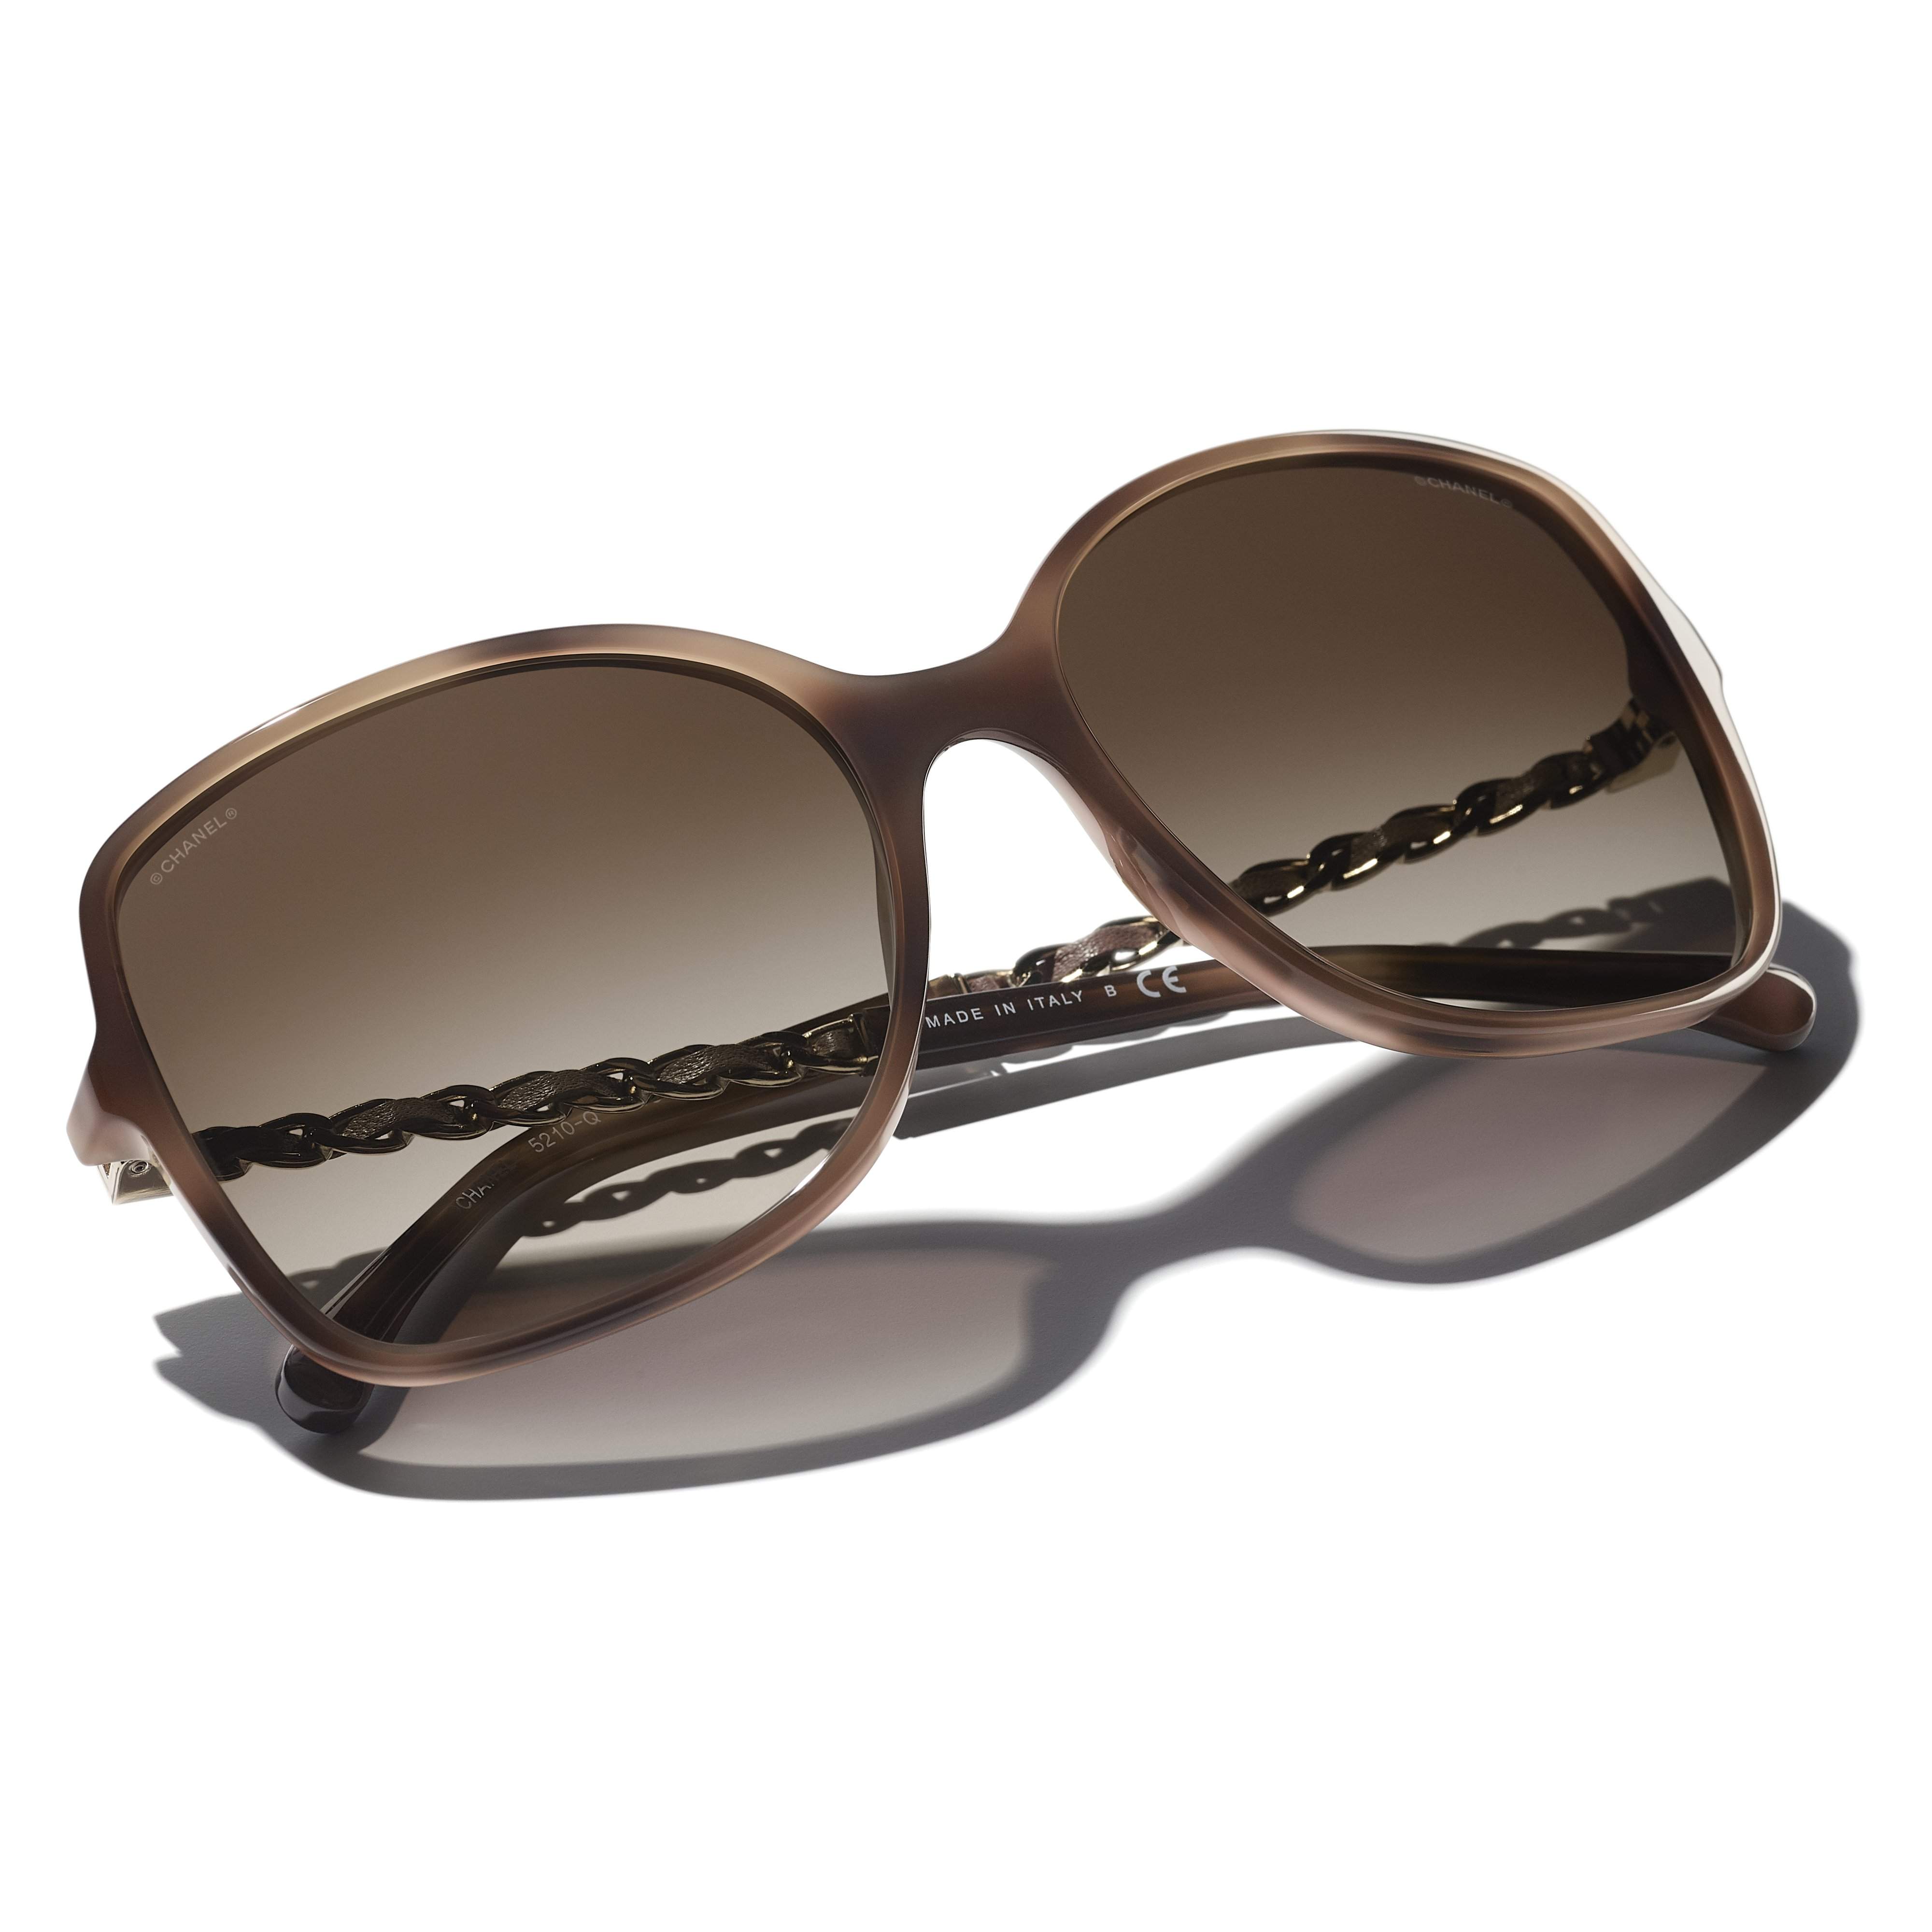 Jual Chanel Sunglasses Model & Desain Terbaru - Harga November